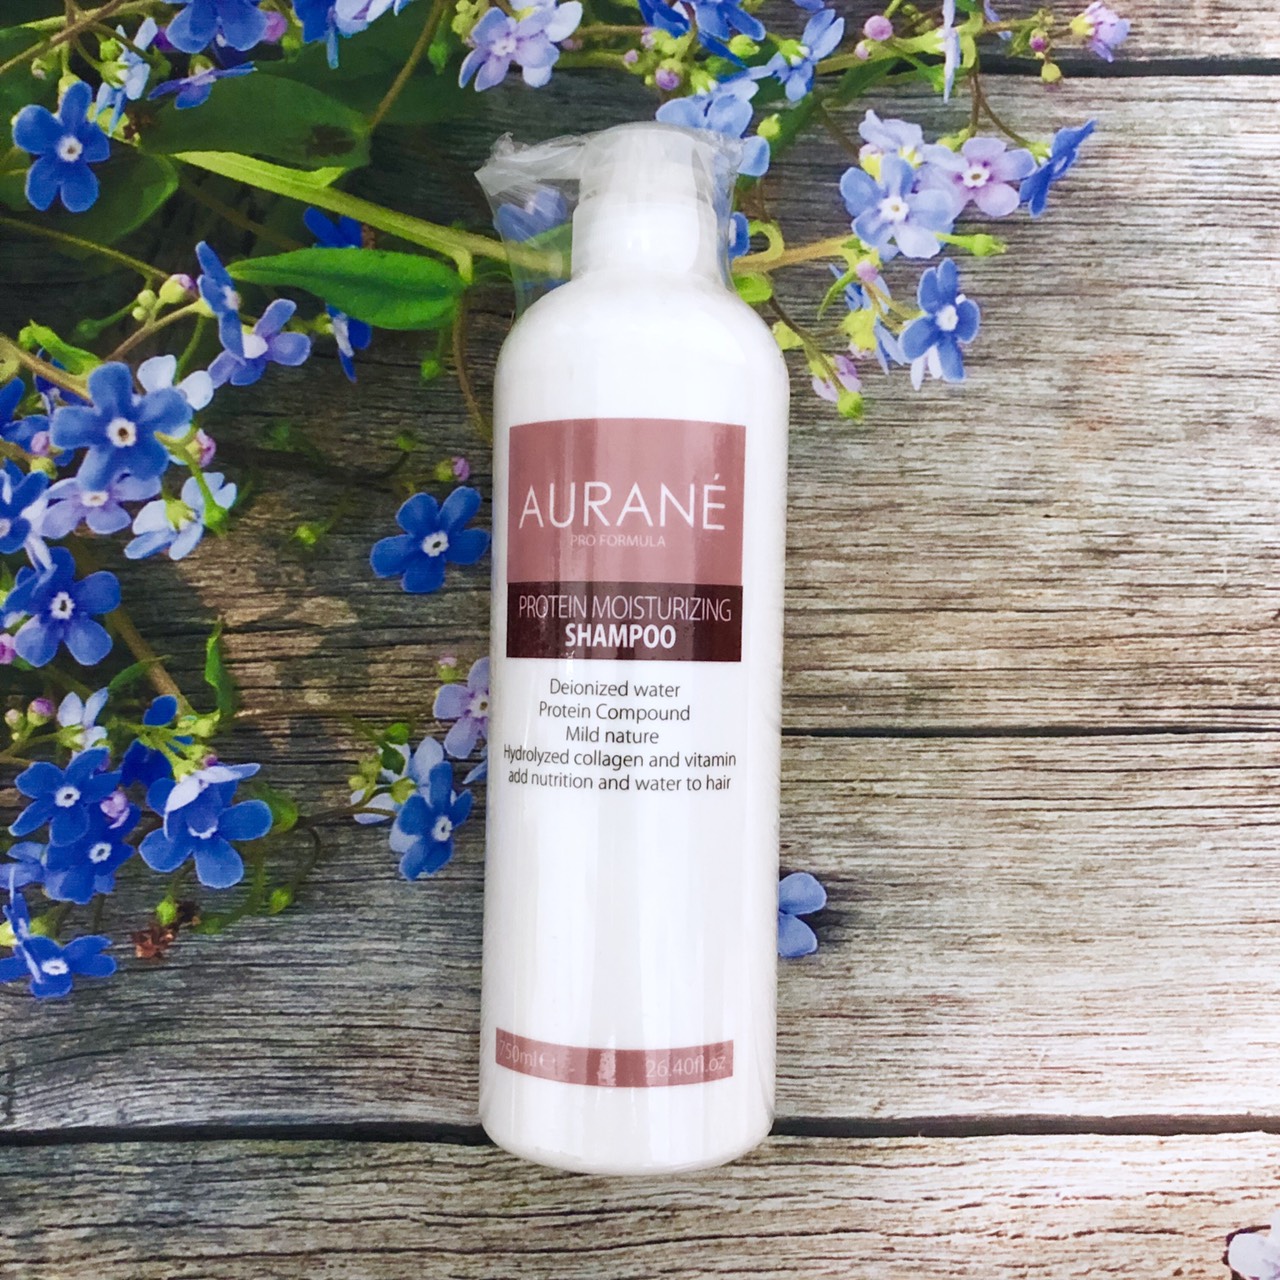 [+Tặng mũ trùm]Dầu gội dưỡng ẩm tăng cường dưỡng chất Aurane Protein Moisturizing shampoo 750ml